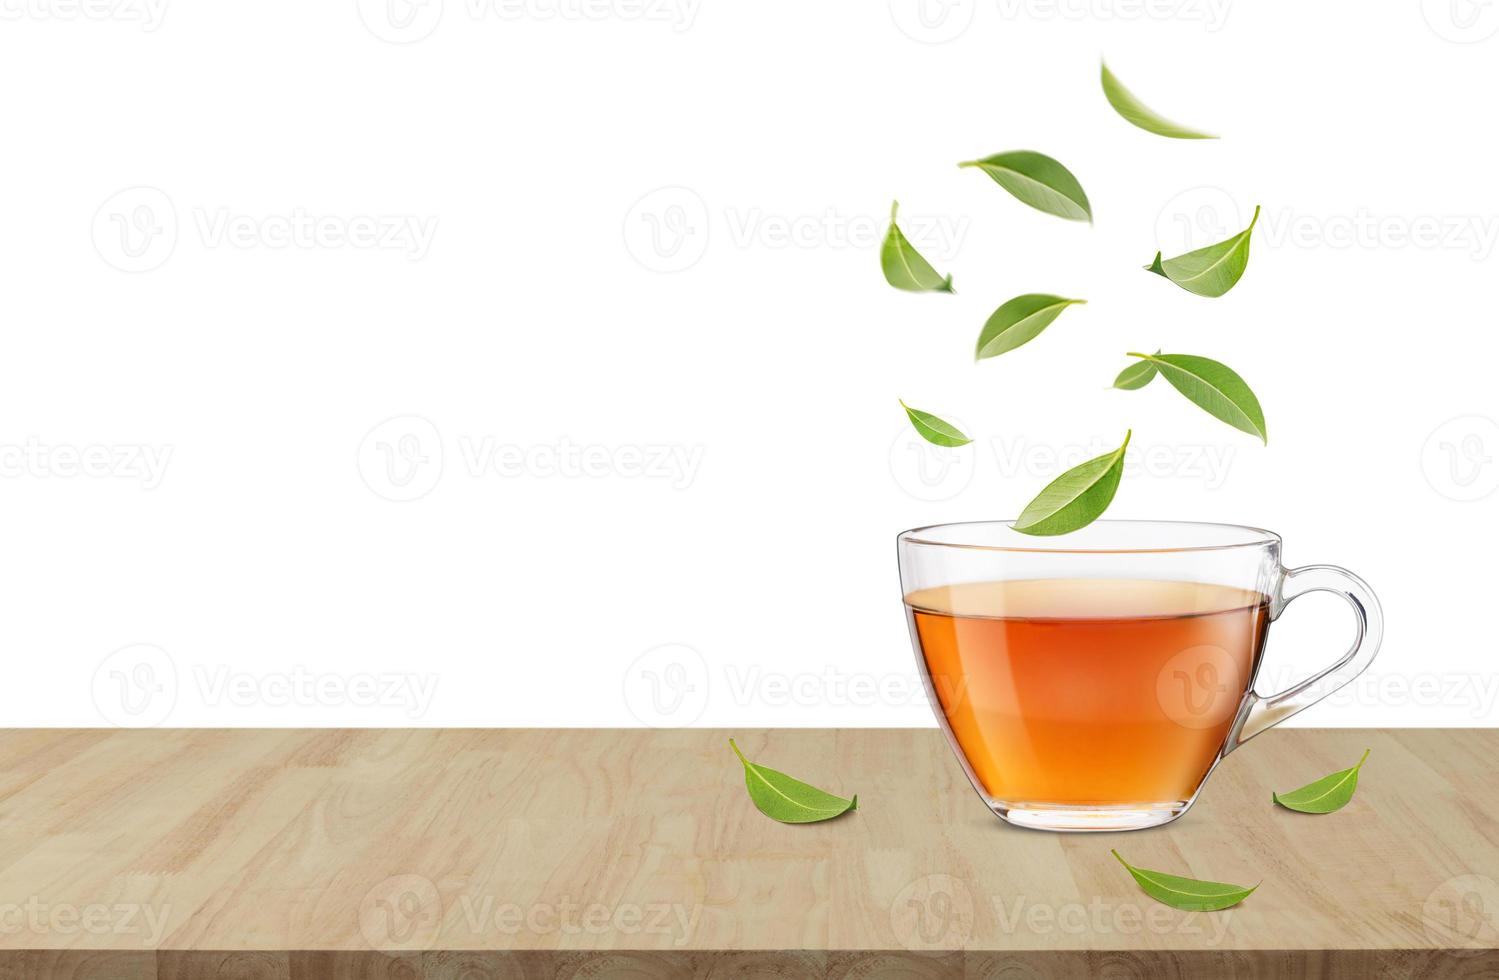 Heiße Tasse Tee auf dem Holztisch mit fliegenden grünen Teeblättern in der Luft, gesunde Produkte aus biologischem, natürlichem Zutatenkonzept, leerer Raum in Studioaufnahme isoliert auf weißem Hintergrund foto